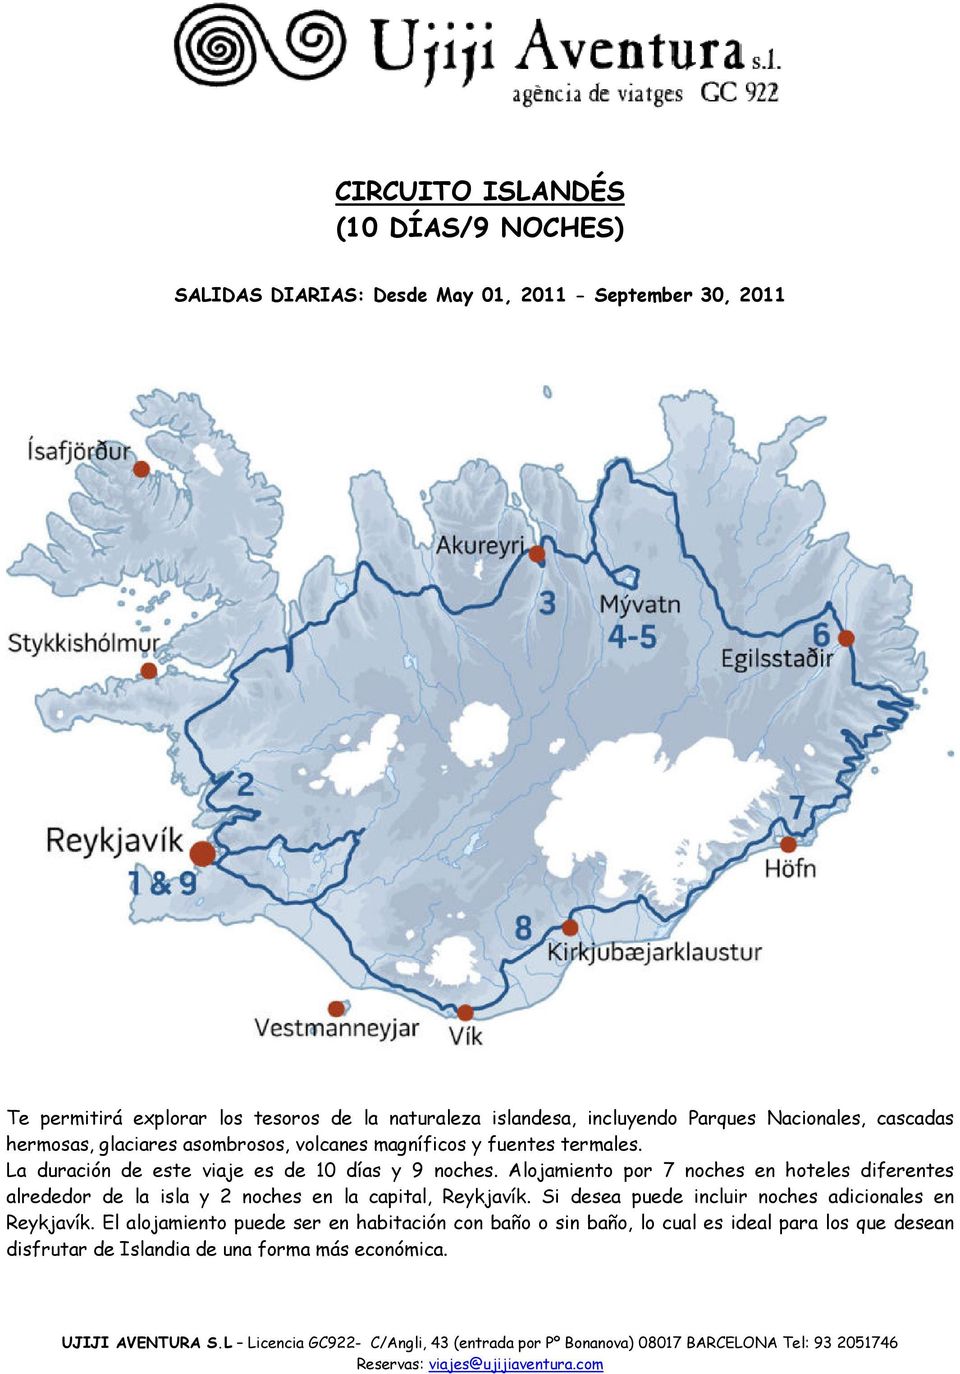 La duración de este viaje es de 10 días y 9 noches. Alojamiento por 7 noches en hoteles diferentes alrededor de la isla y 2 noches en la capital, Reykjavík.